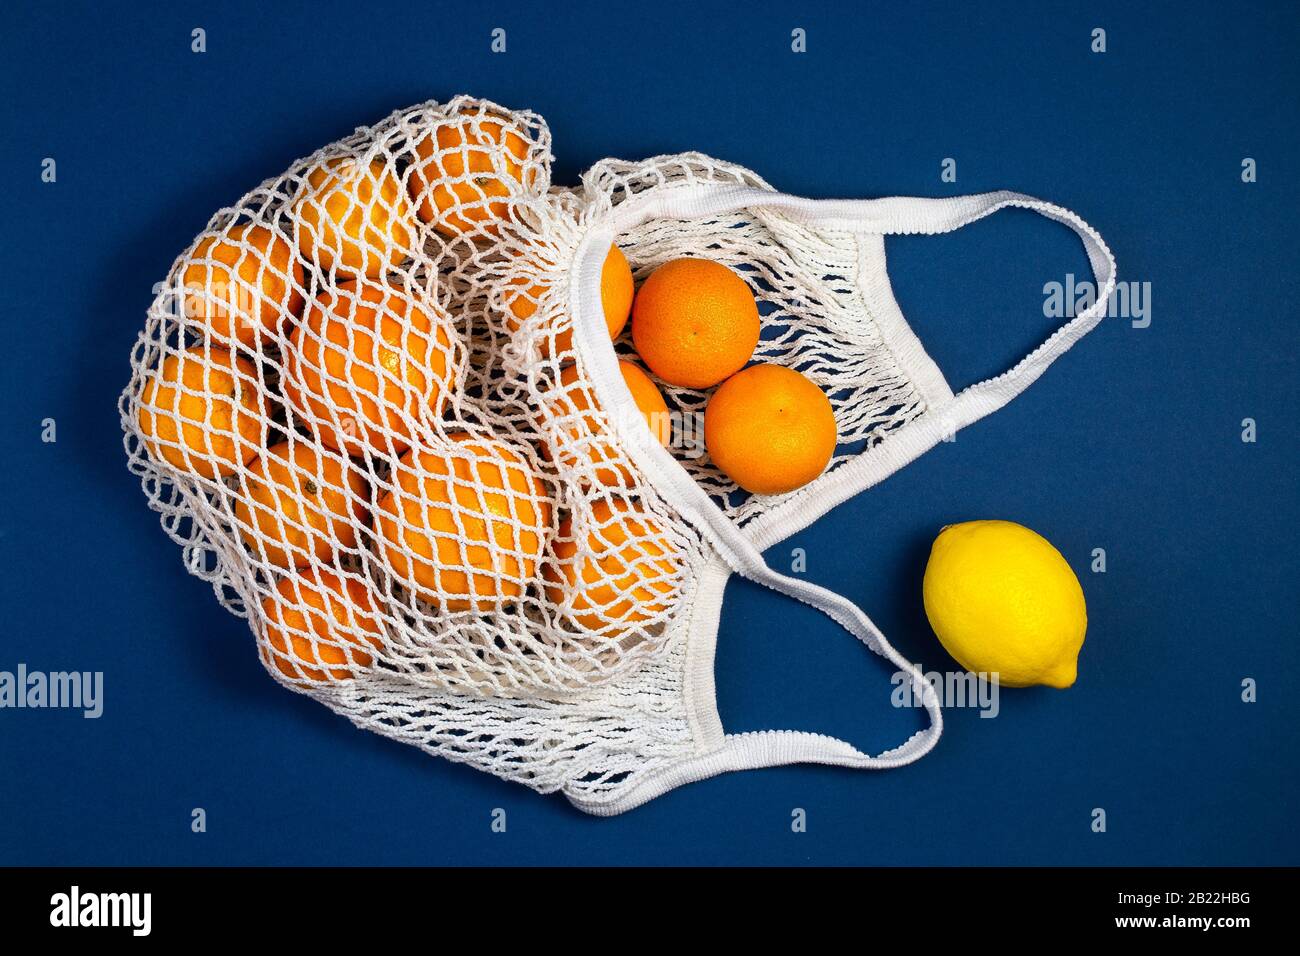 Sac de shopping en mesh avec tangerines, citrons sur fond bleu classique. Plat, vue du dessus. Zéro déchet, concept sans plastique. Une saine alimentation propre meurt Banque D'Images